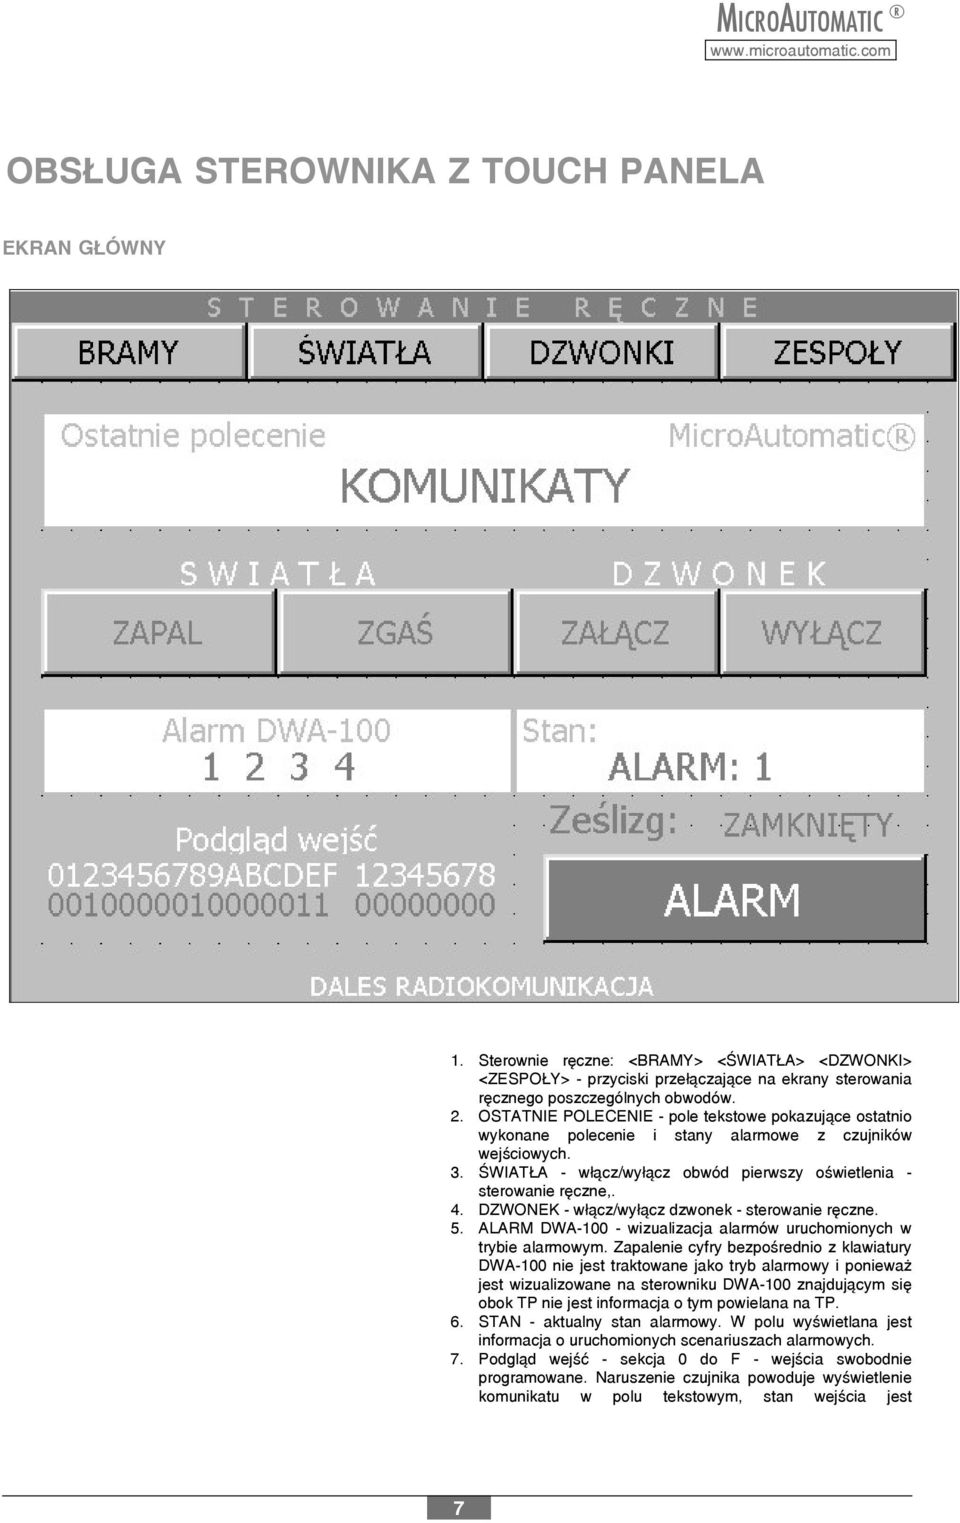 DZWONEK - w³¹cz/wy³¹cz dzwonek - sterowanie rêczne. 5. ALARM DWA-100 - wizualizacja alarmów uruchomionych w trybie alarmowym.